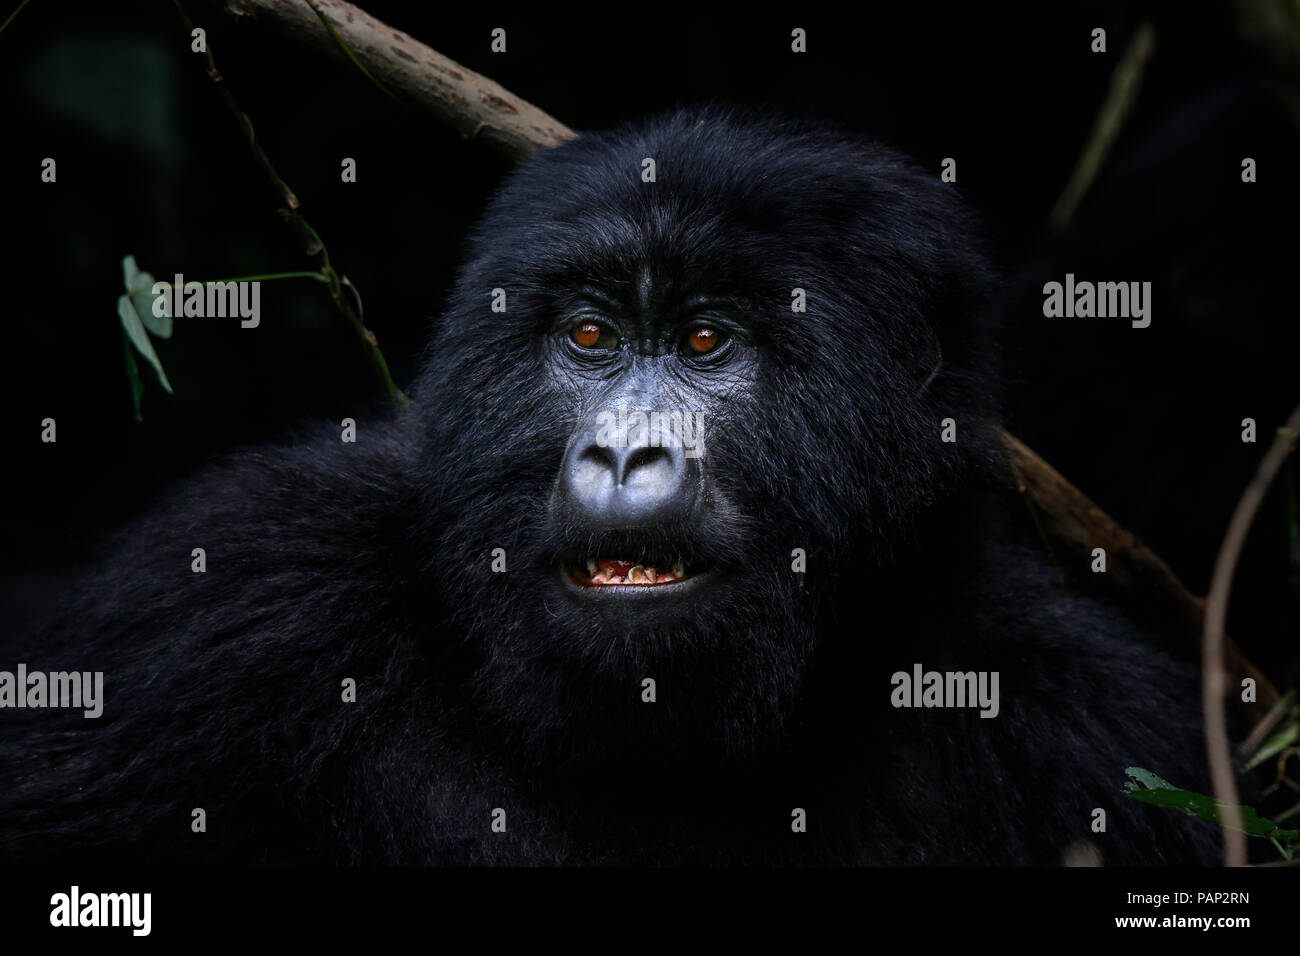 Africa, Repubblica Democratica del Congo, gorilla di montagna nella giungla Foto Stock